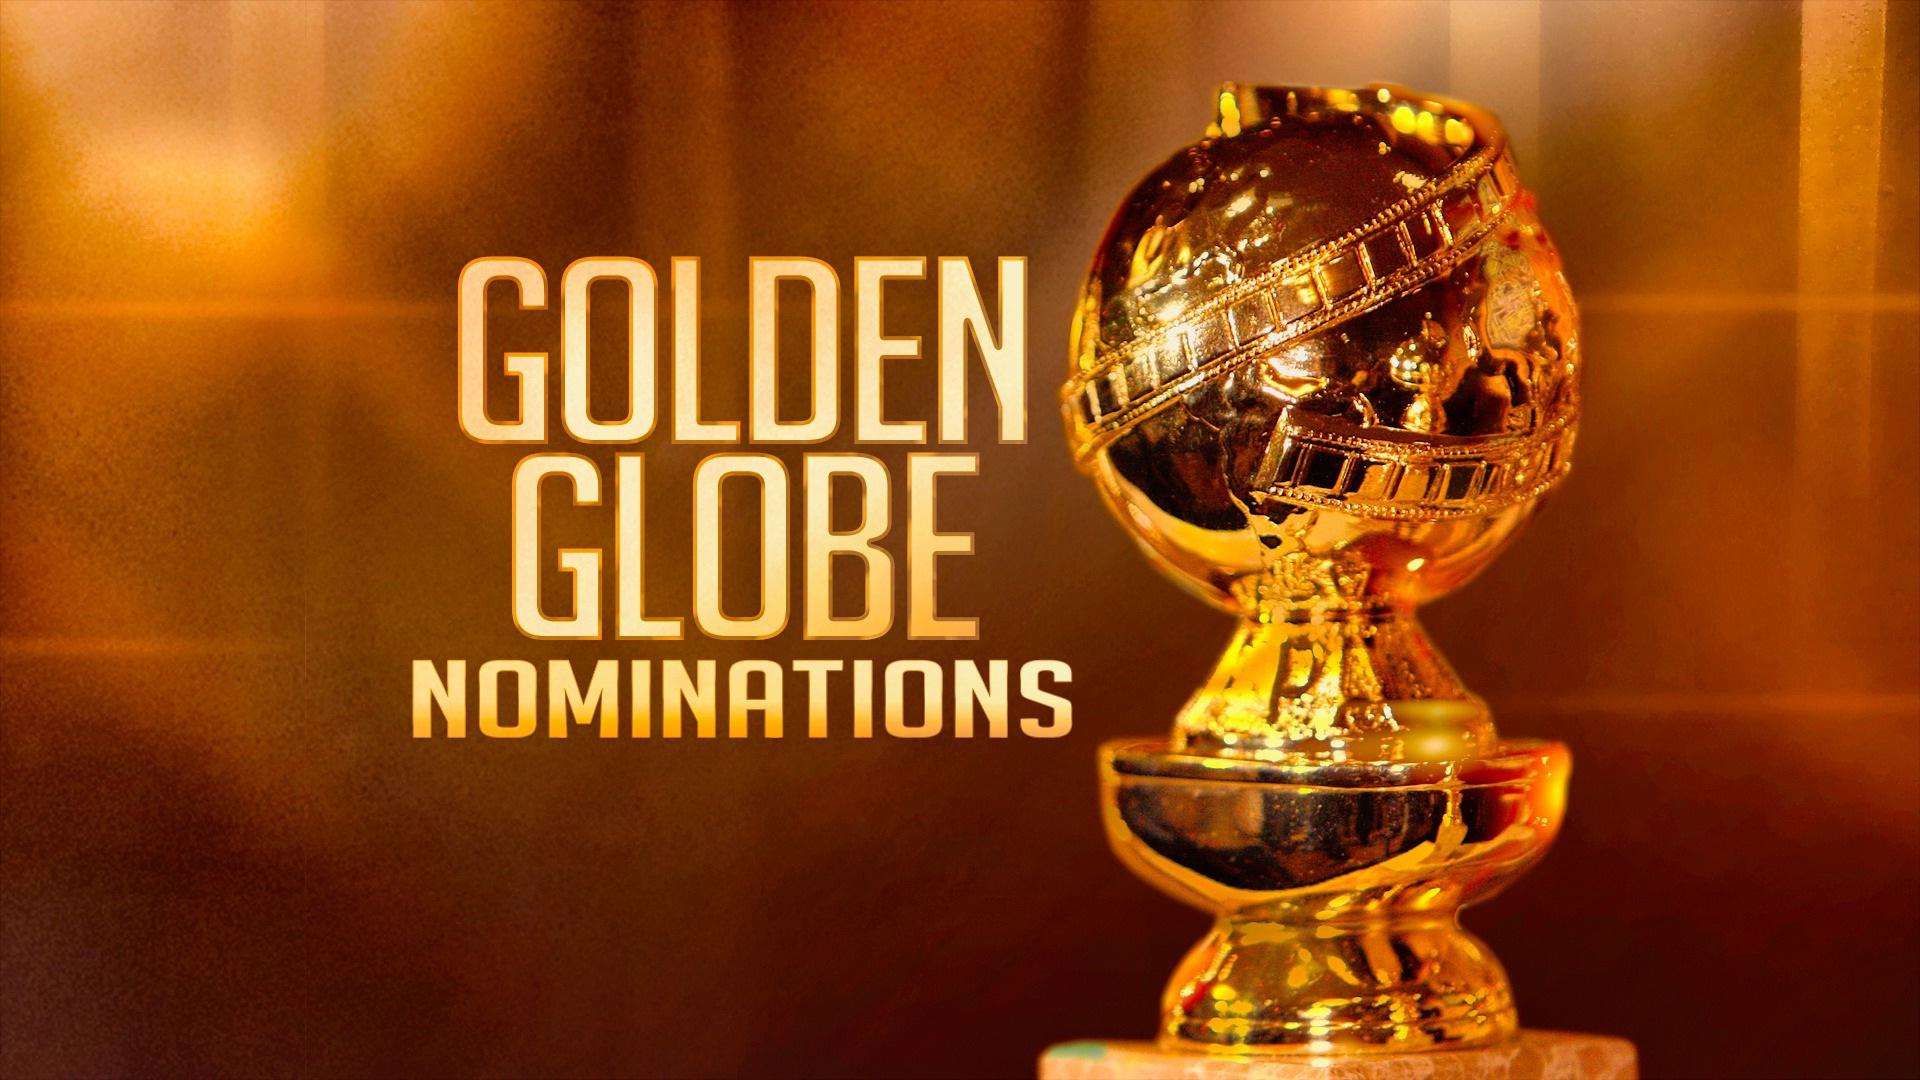 Golden Globes Awards 2021: 78वां गोल्डन ग्लोब अवॉर्ड्स में रहा नोमैडलैंड और द क्राउन का जलवा, देखें पूरी लिस्ट